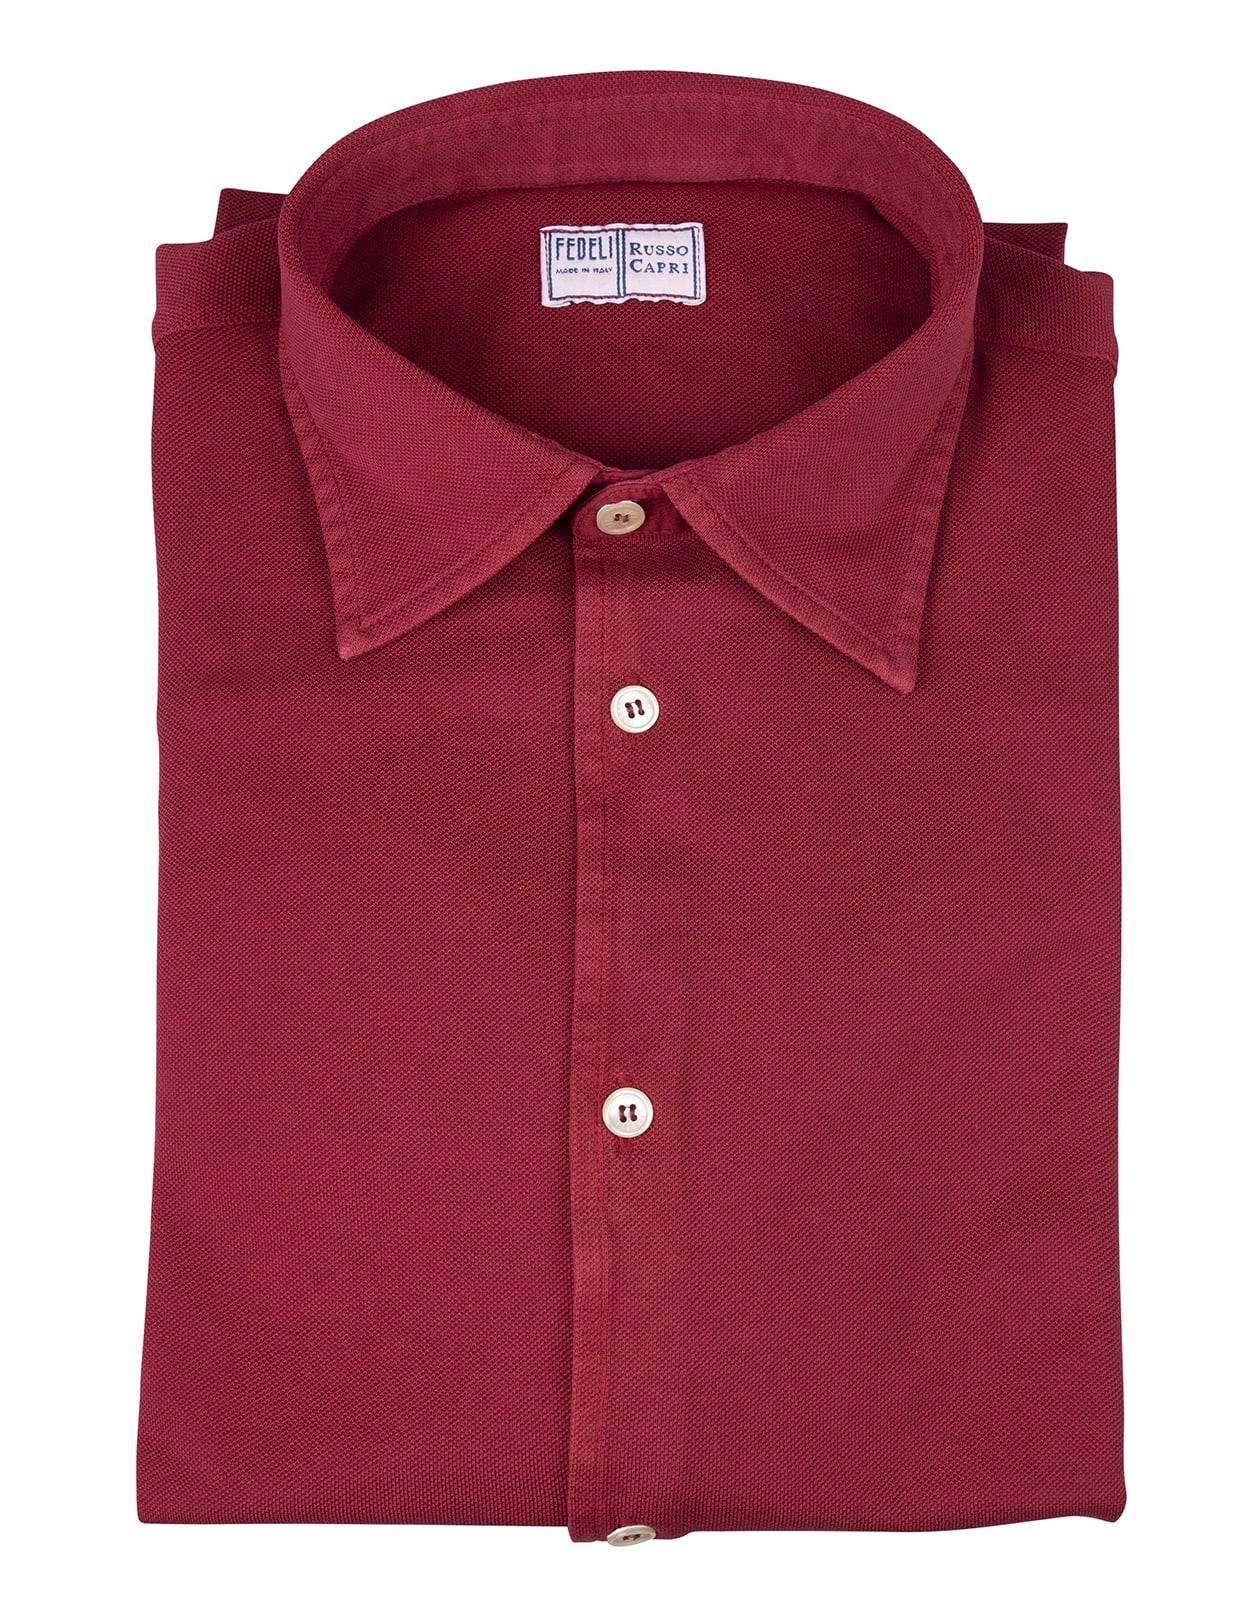 Fedeli Man Shirt In Dark Red Cotton Pique